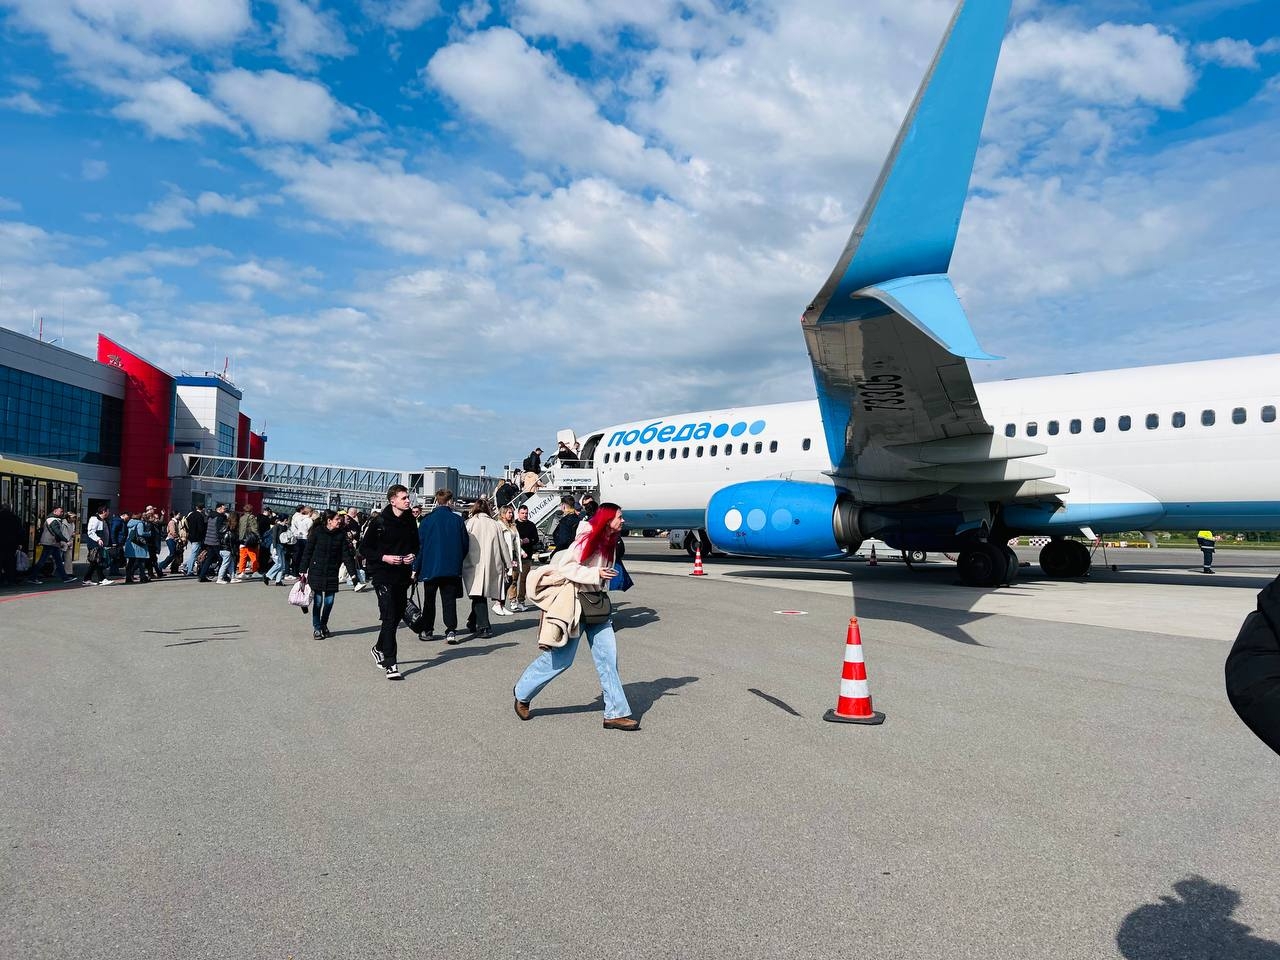 Сезон отдыха начался: в Пулково увеличат количество рейсов в Калининград